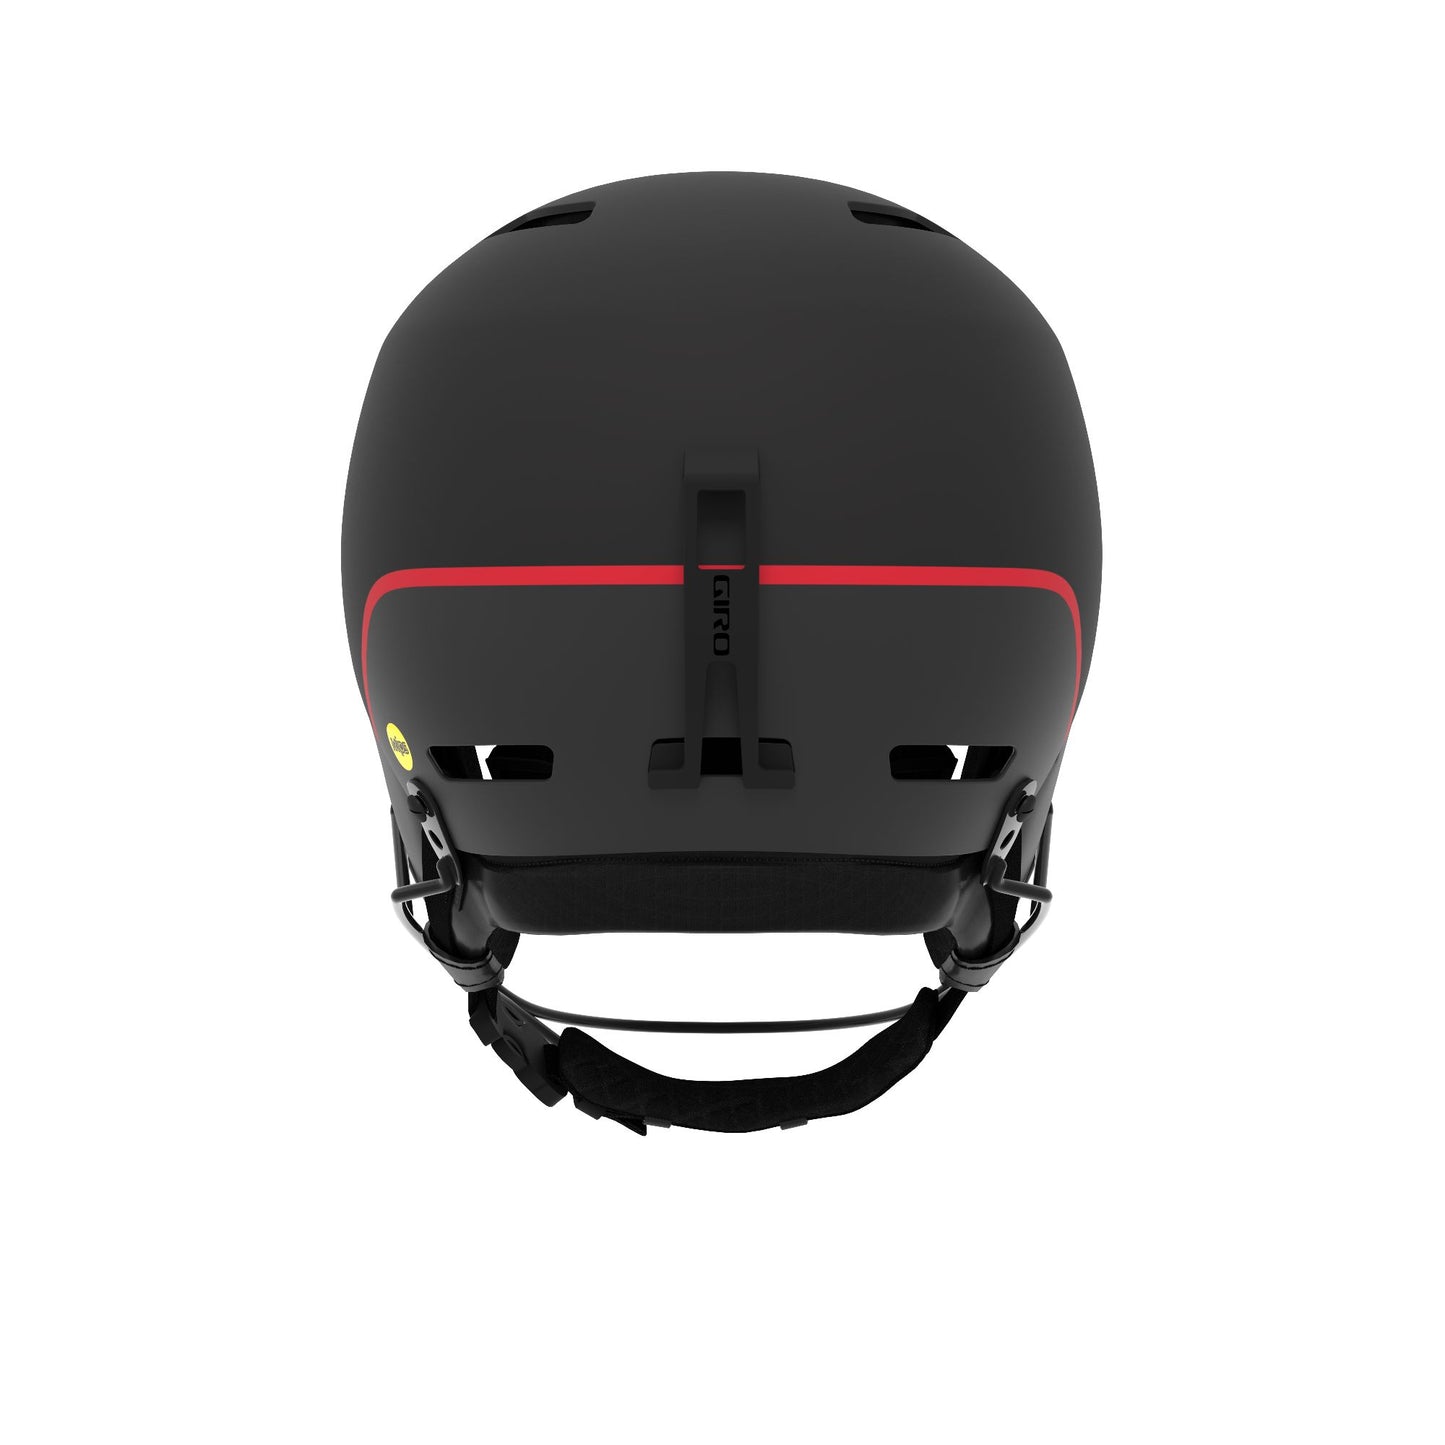 Giro Ledge SL MIPS Helmet Matte Black Snow Helmets